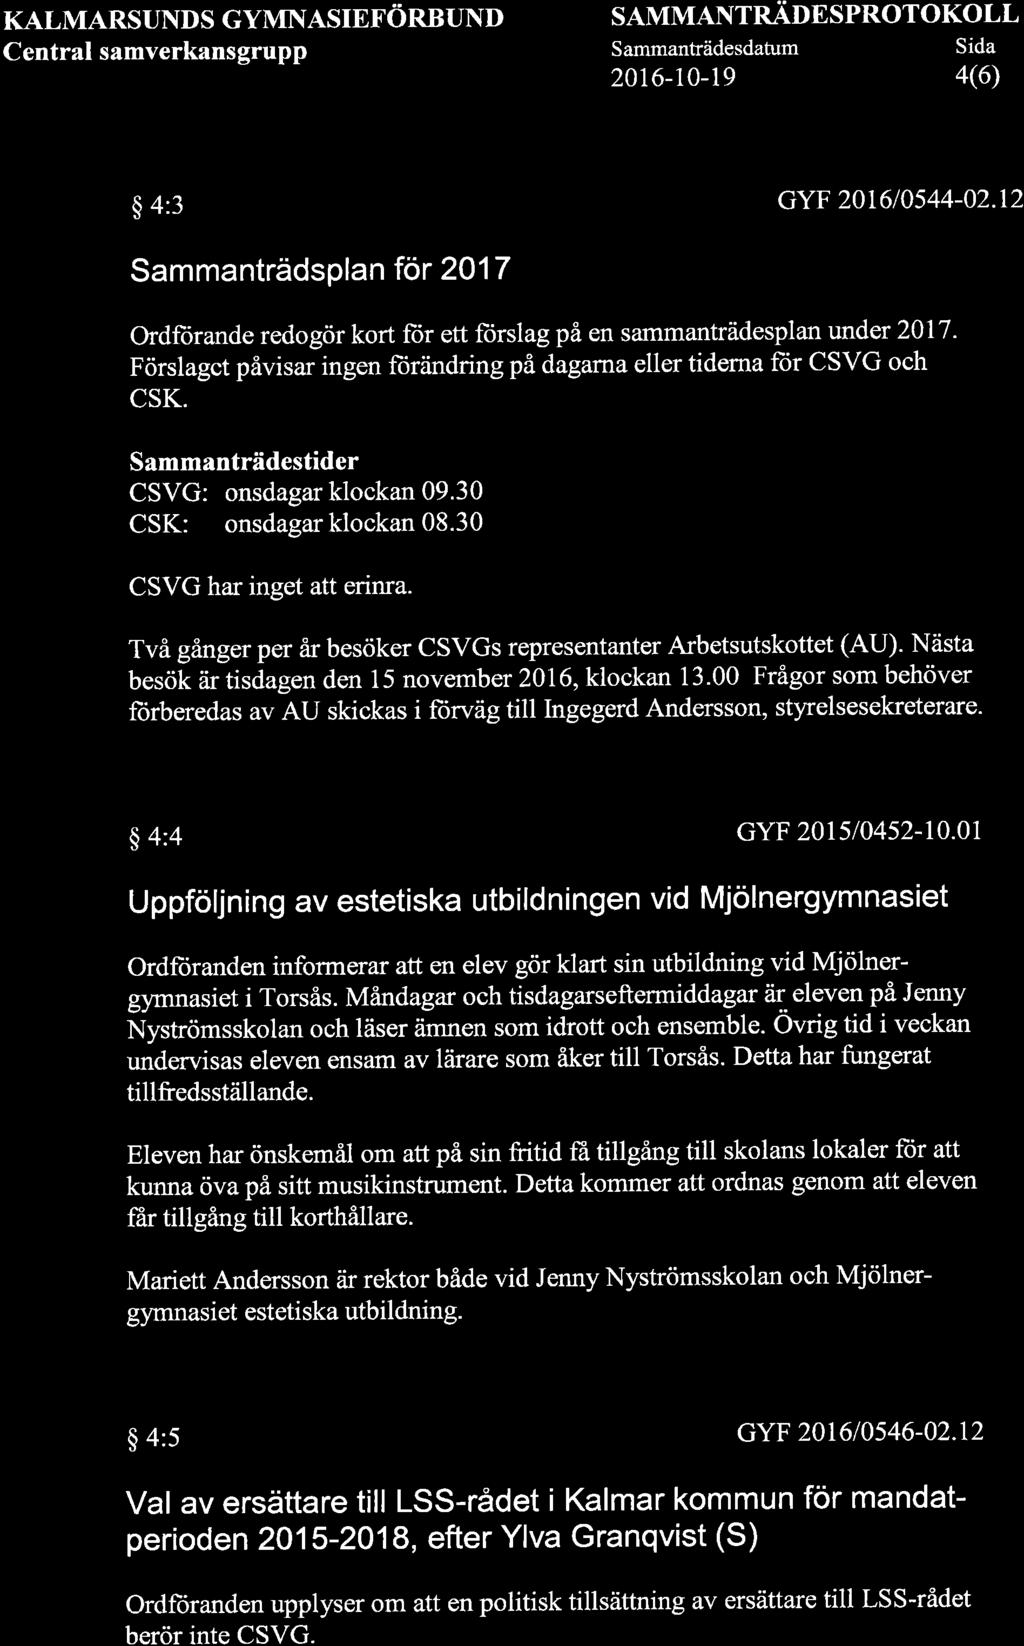 KALMARSUNDS GYMNASIEFÖRBUND Central samverkansgrupp SAMMANTNÄONSPROTOKOLL Sammanträdesdatum Sida 2016-10-19 4(6) $ 4:3 GYF 201610544-02.